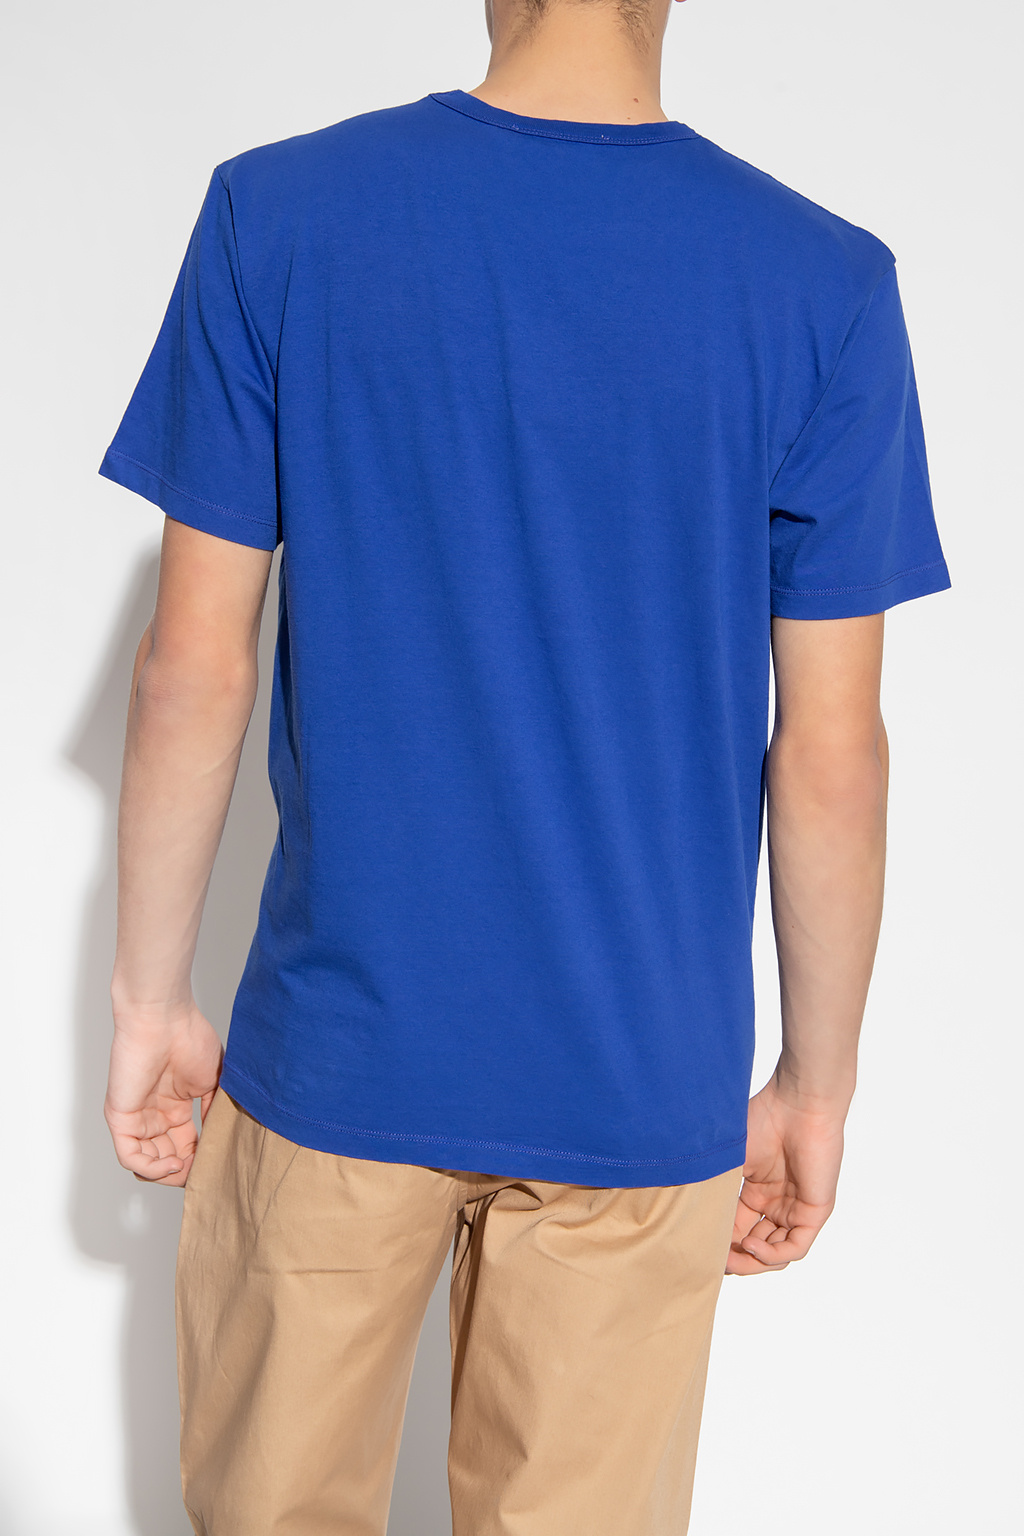 Maison Kitsuné Tie Dye Fearless Slogan T-Shirt 3-16yrs